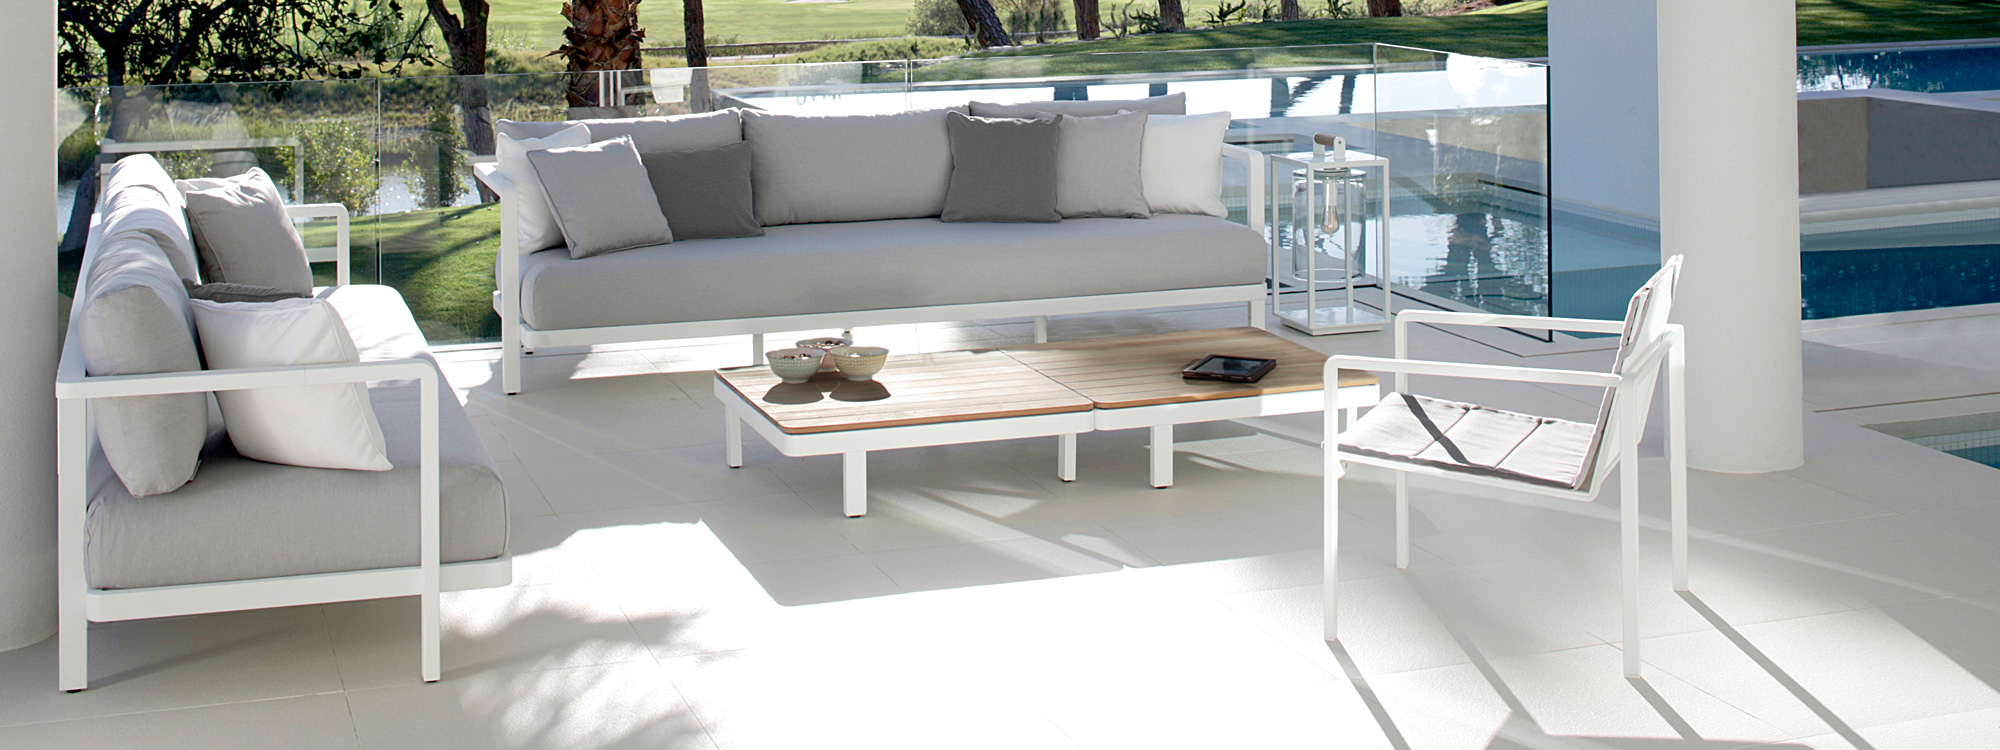 Alura modern modular outdoor sofa is a high quality garden sofa in luxury exterior sofa materials by Royal Botania garden furniture company